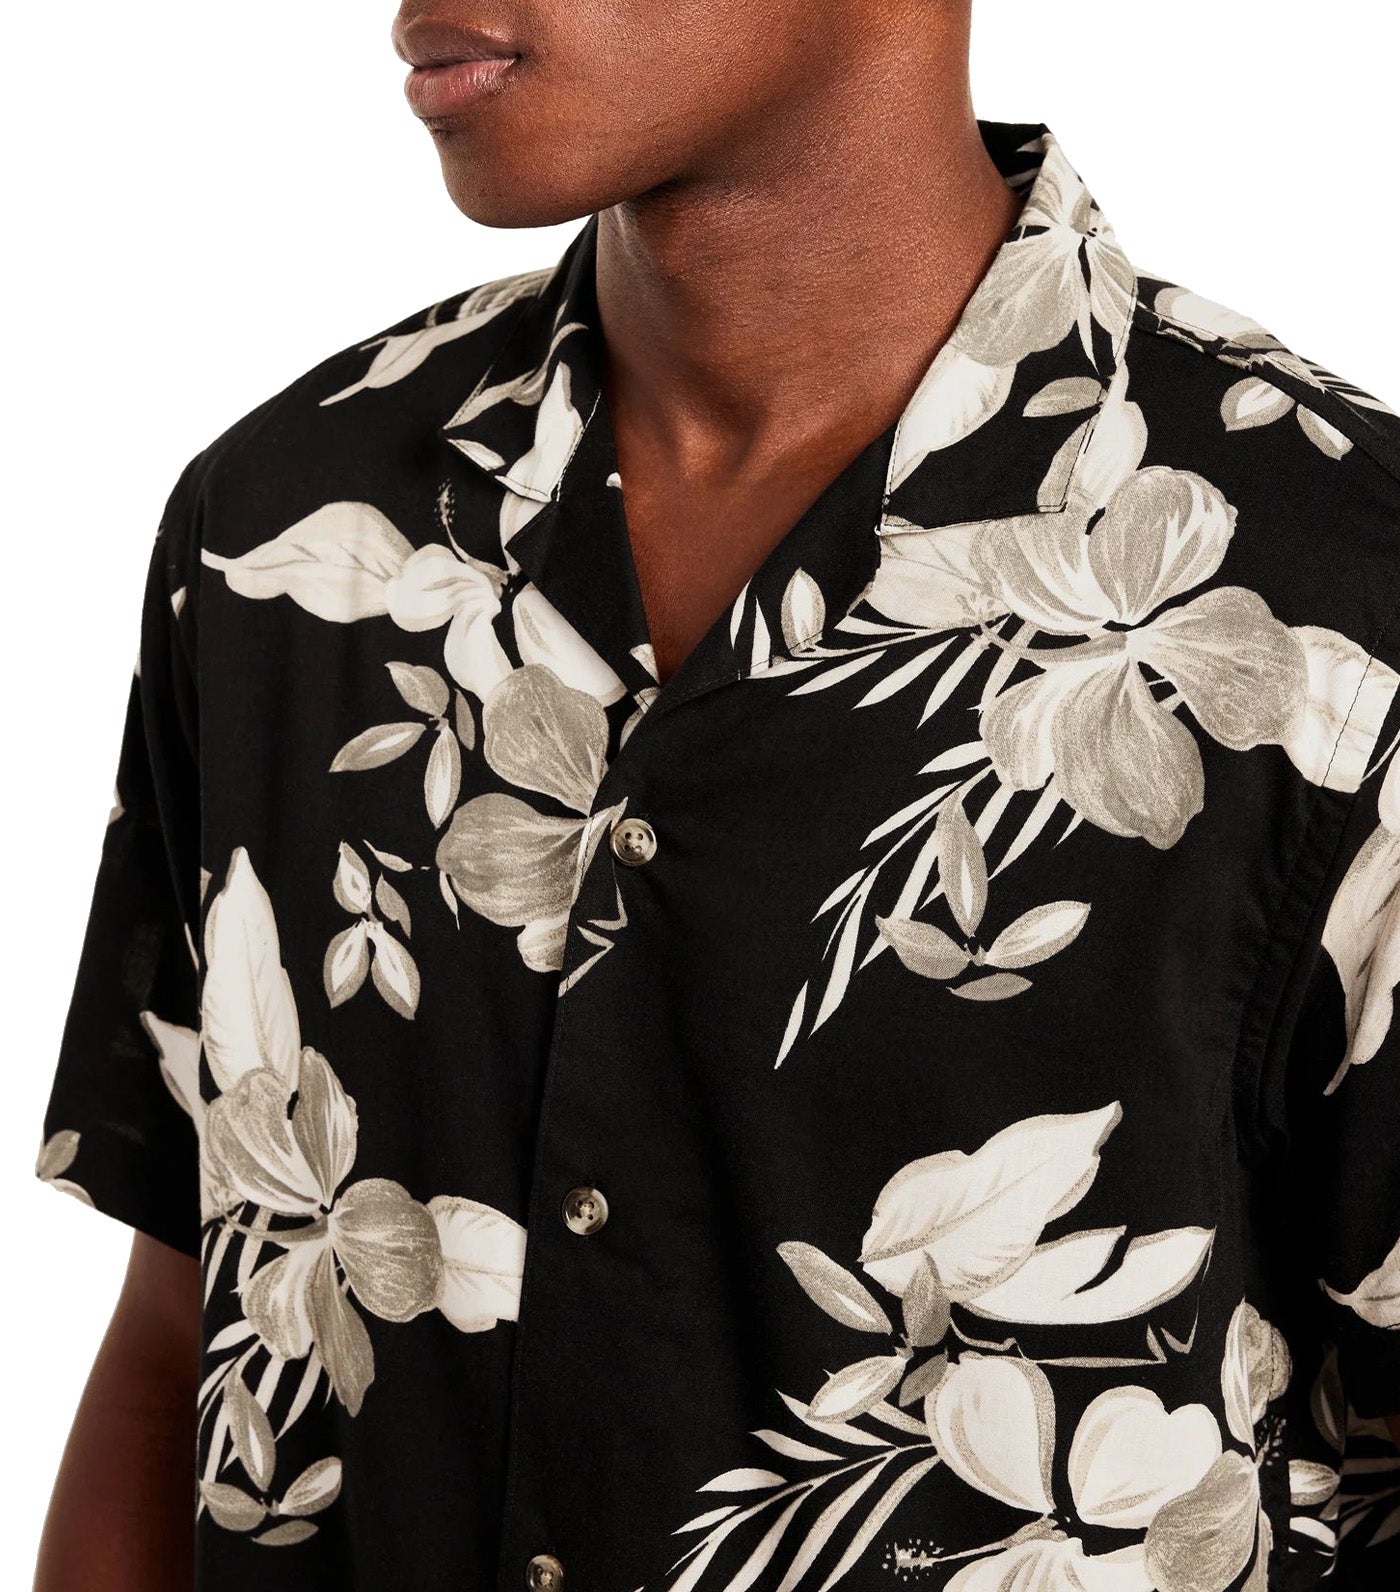 Short-Sleeve Printed Camp Shirt for Men Black Floral